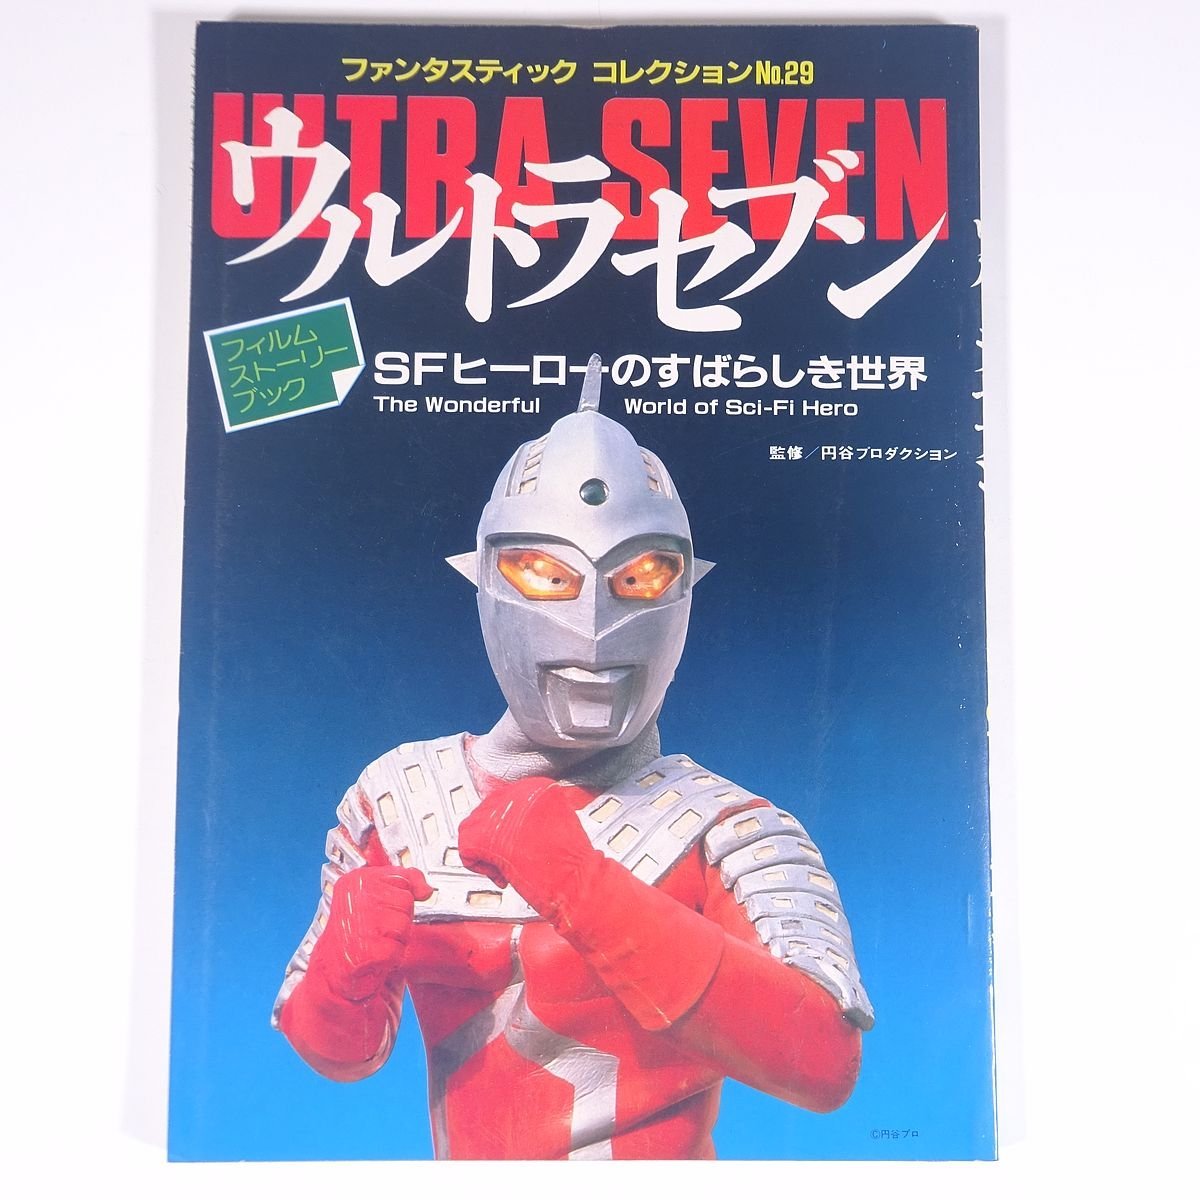  Ultra Seven SF герой. ..... мир вентилятор ta палочка * коллекция No.29 утро день Sonorama 1983 большой книга@ спецэффекты Ultraman 